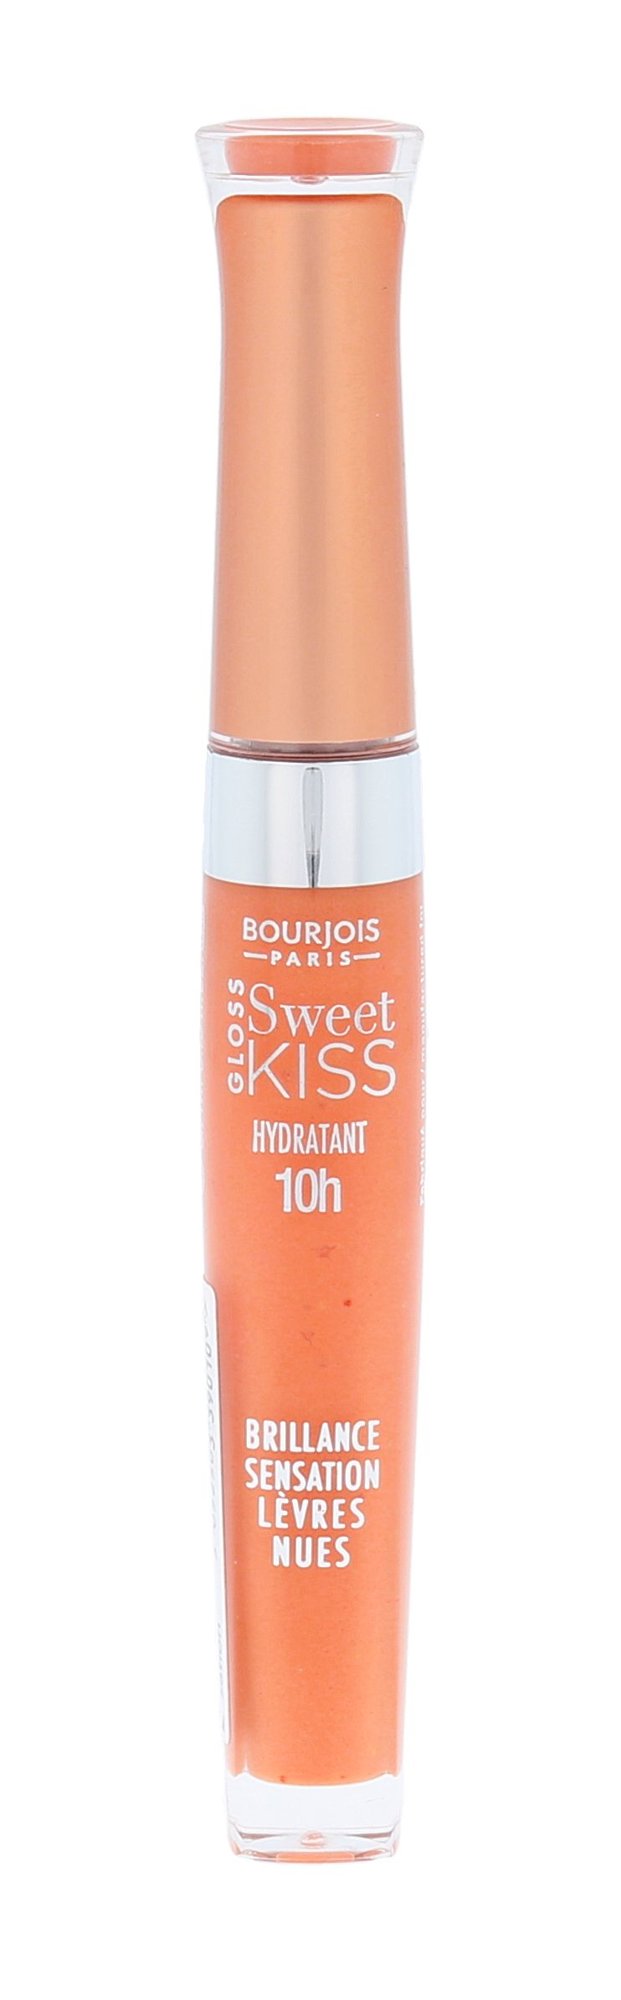 BOURJOIS Paris Sweet Kiss Gloss